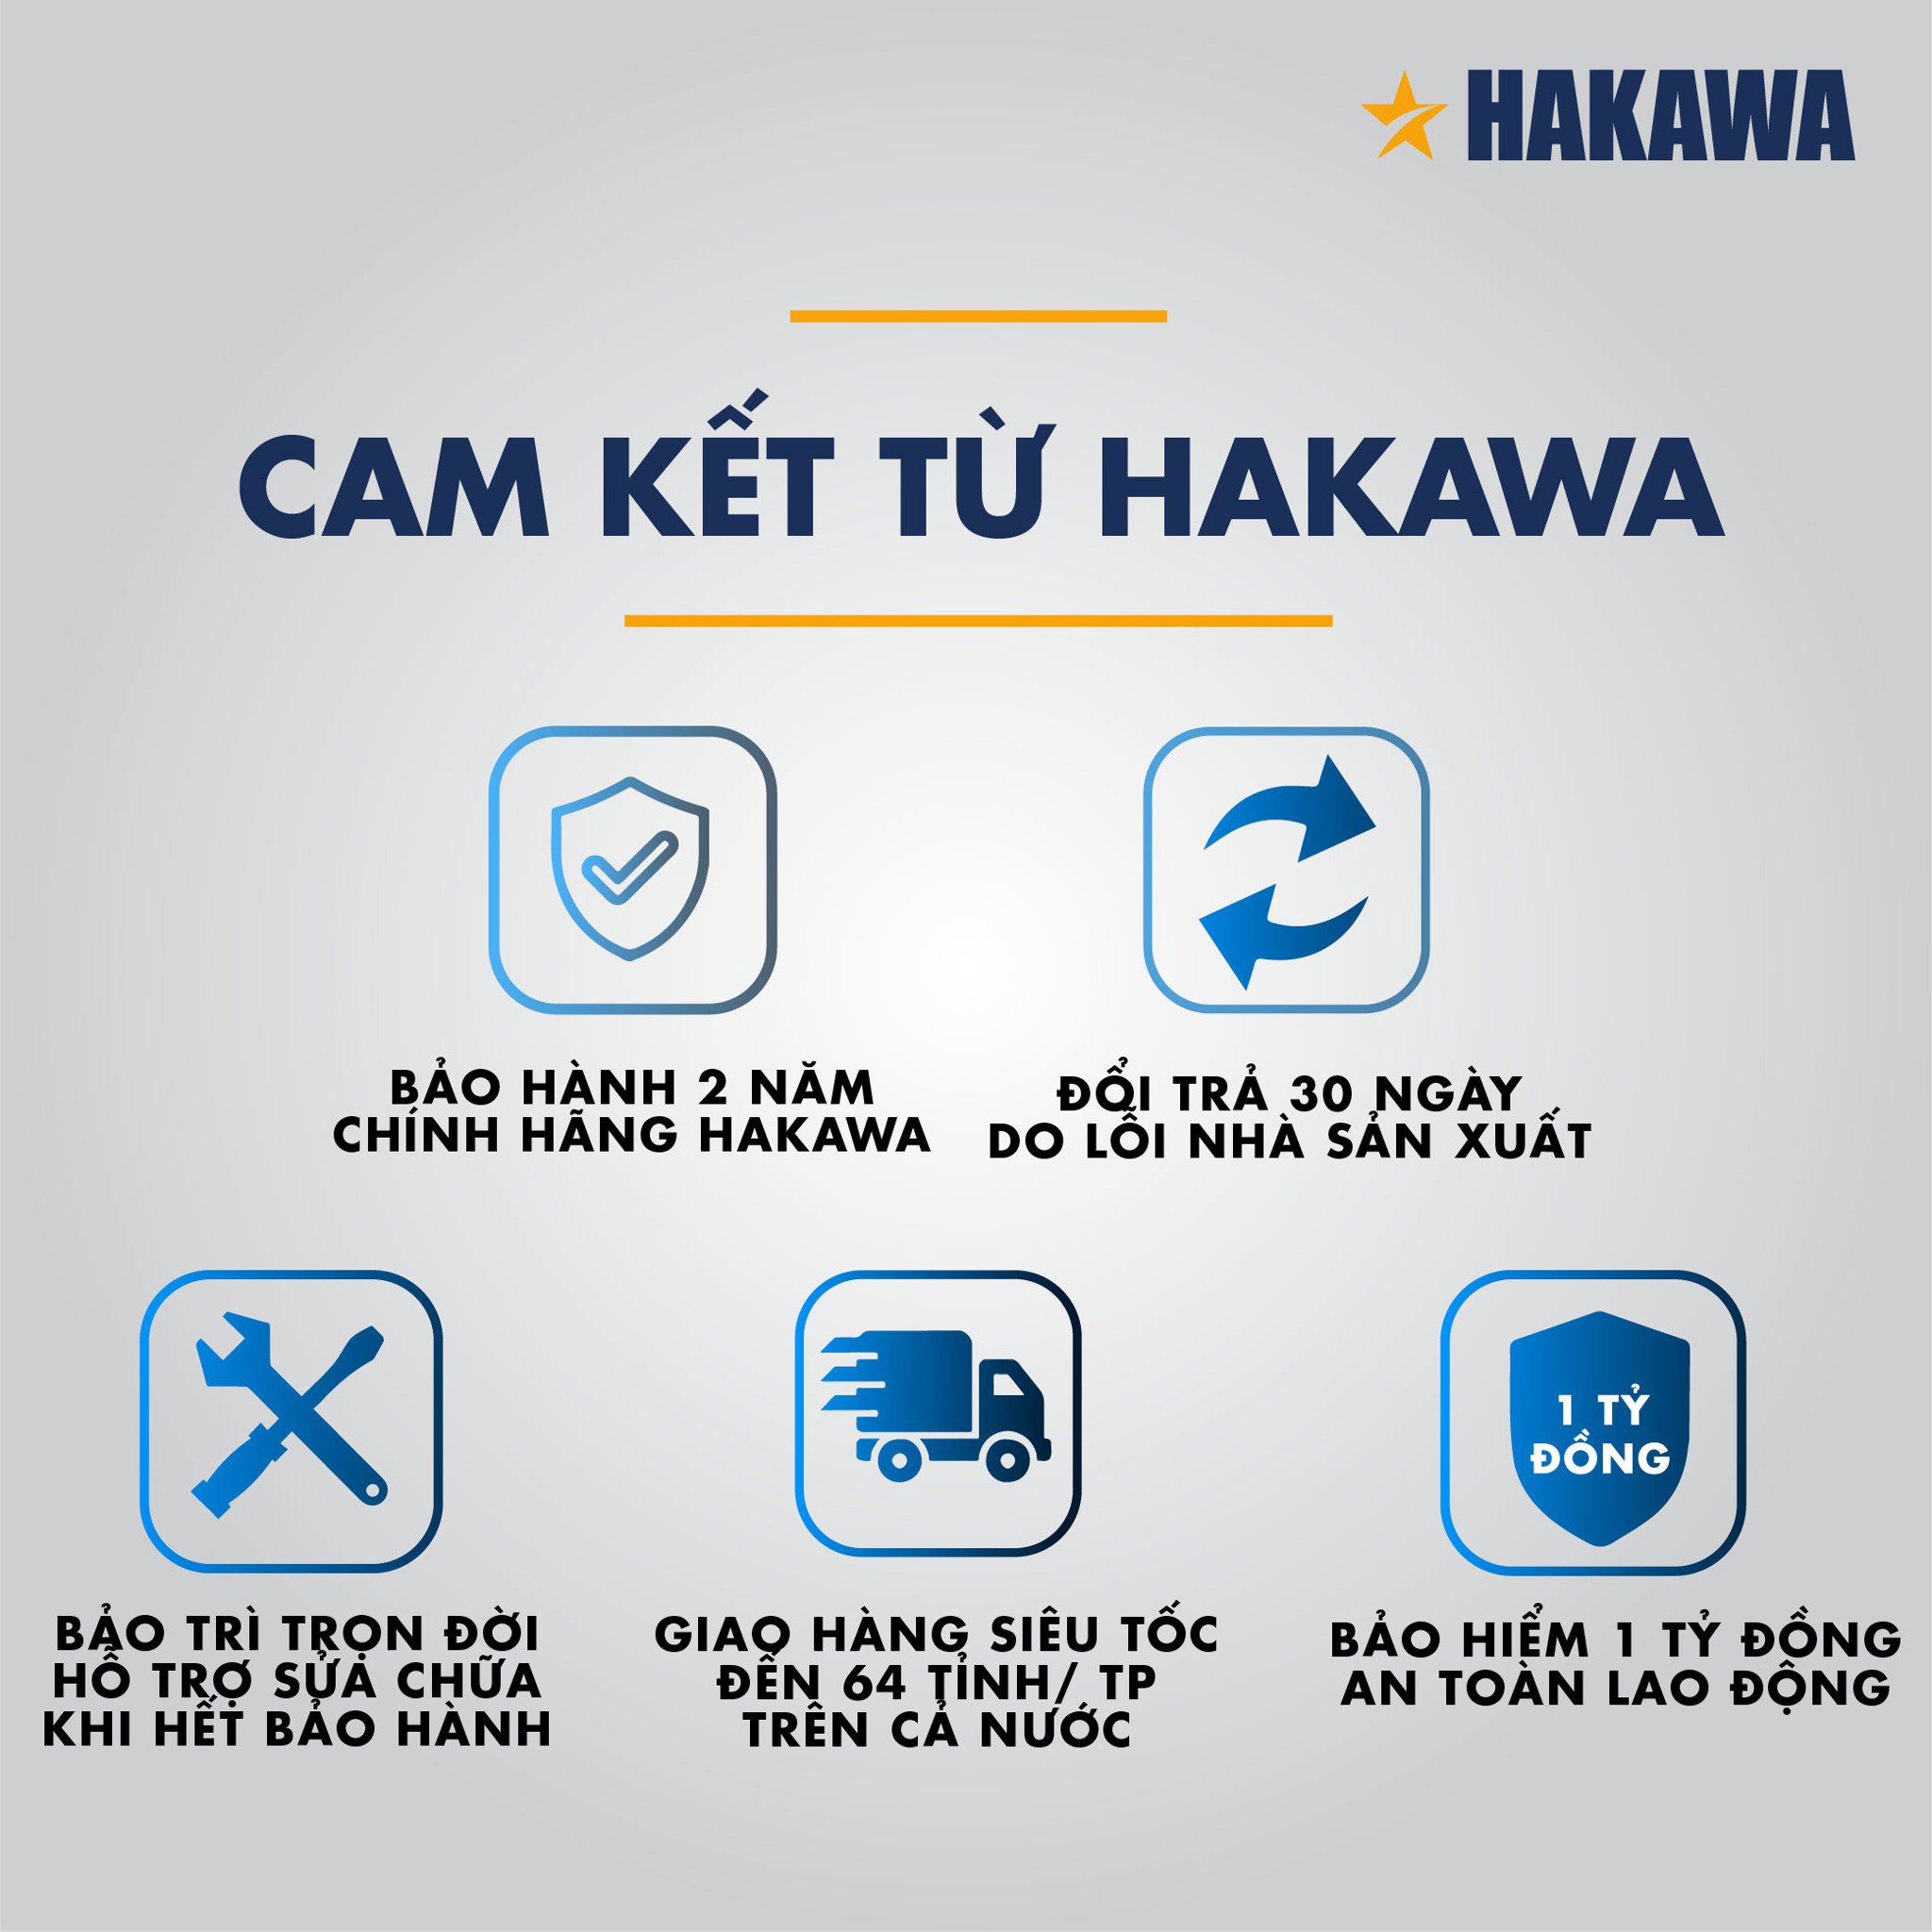 Thang nhôm HAKAWA tự hào mang đến sự an toàn cho khách hàng